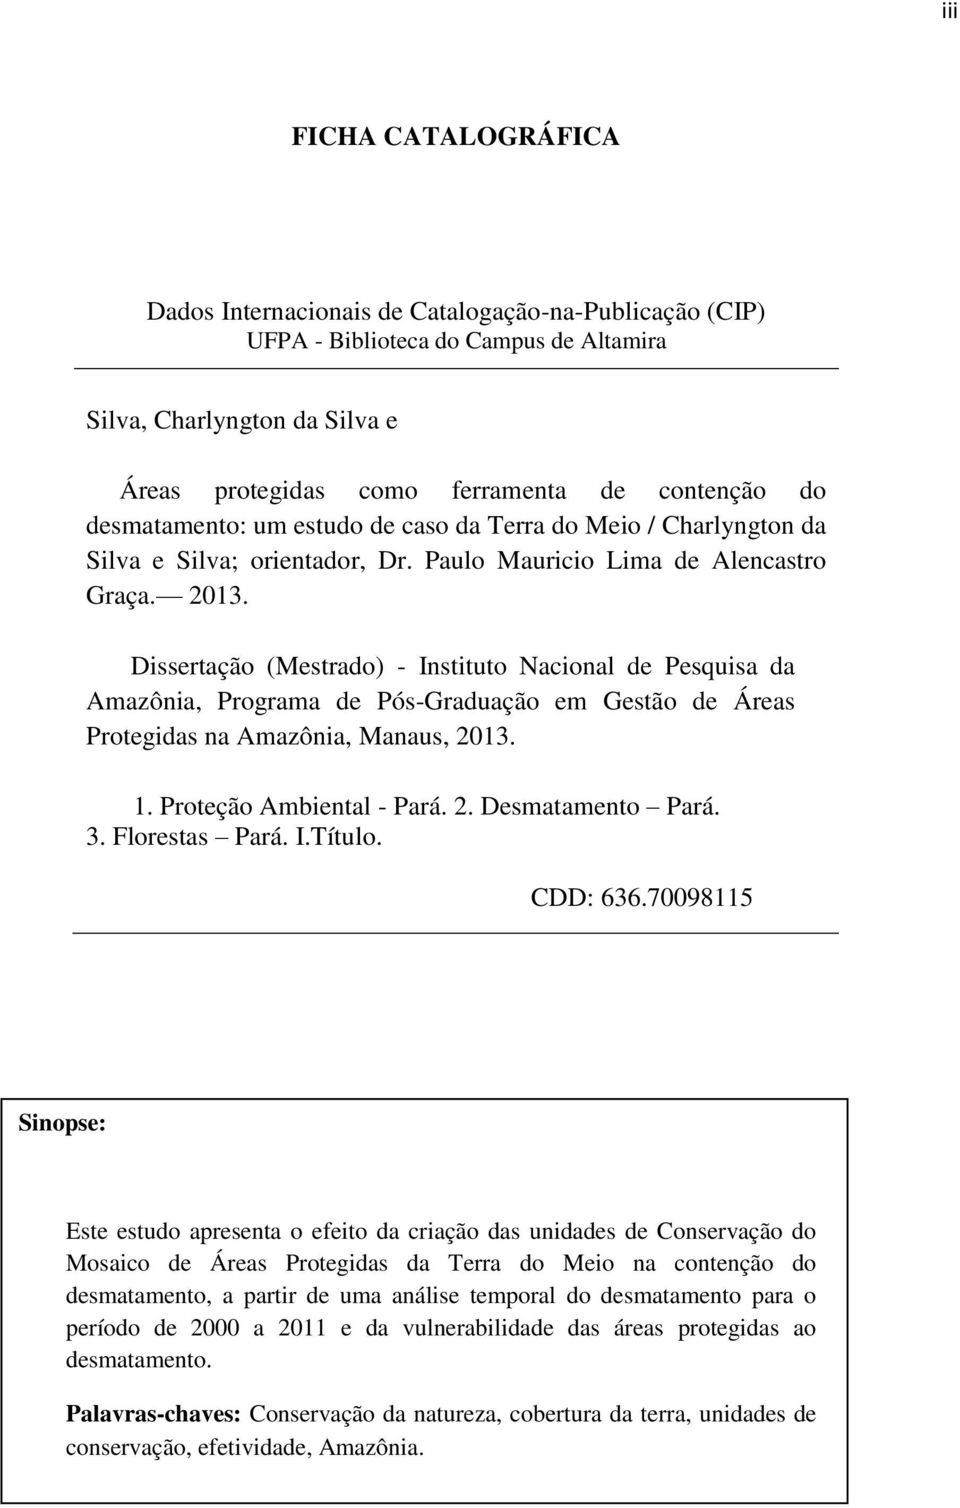 Dissertação (Mestrado) - Instituto Nacional de Pesquisa da Amazônia, Programa de Pós-Graduação em Gestão de Áreas Protegidas na Amazônia, Manaus, 2013. 1. Proteção Ambiental - Pará. 2. Desmatamento Pará.